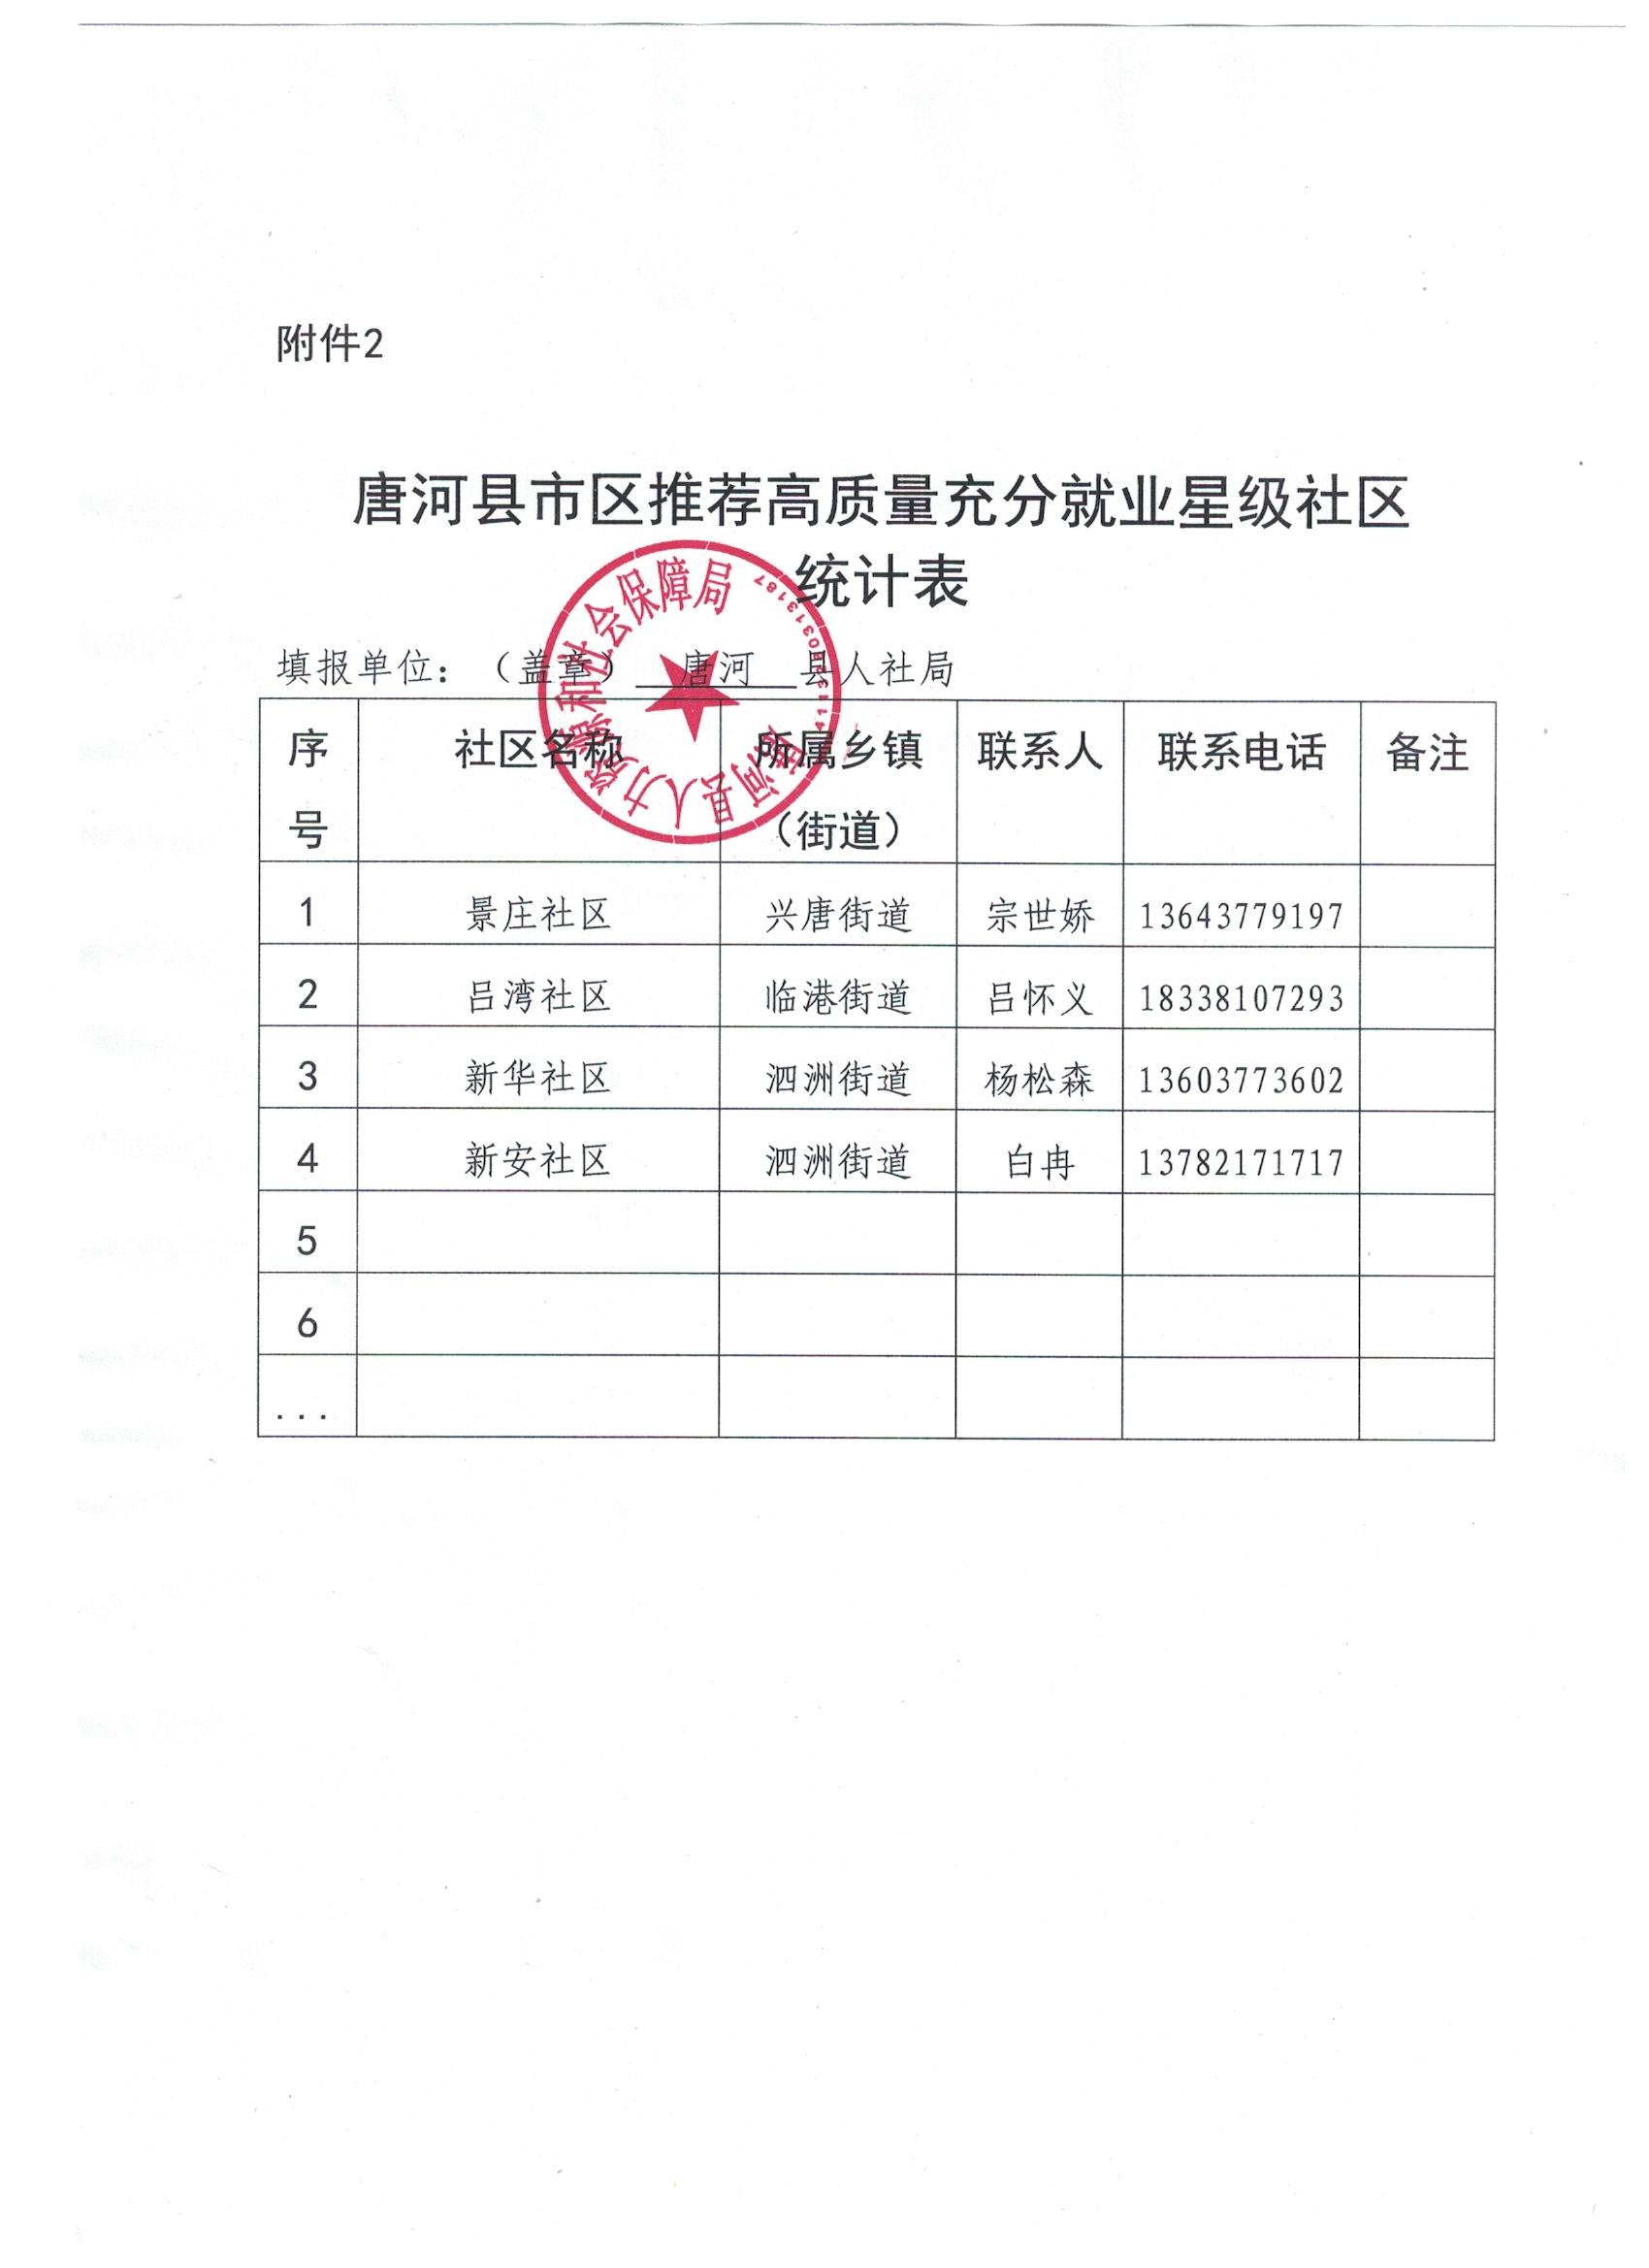 唐河县市区推荐高质量充分就业星级社区统计表.jpg